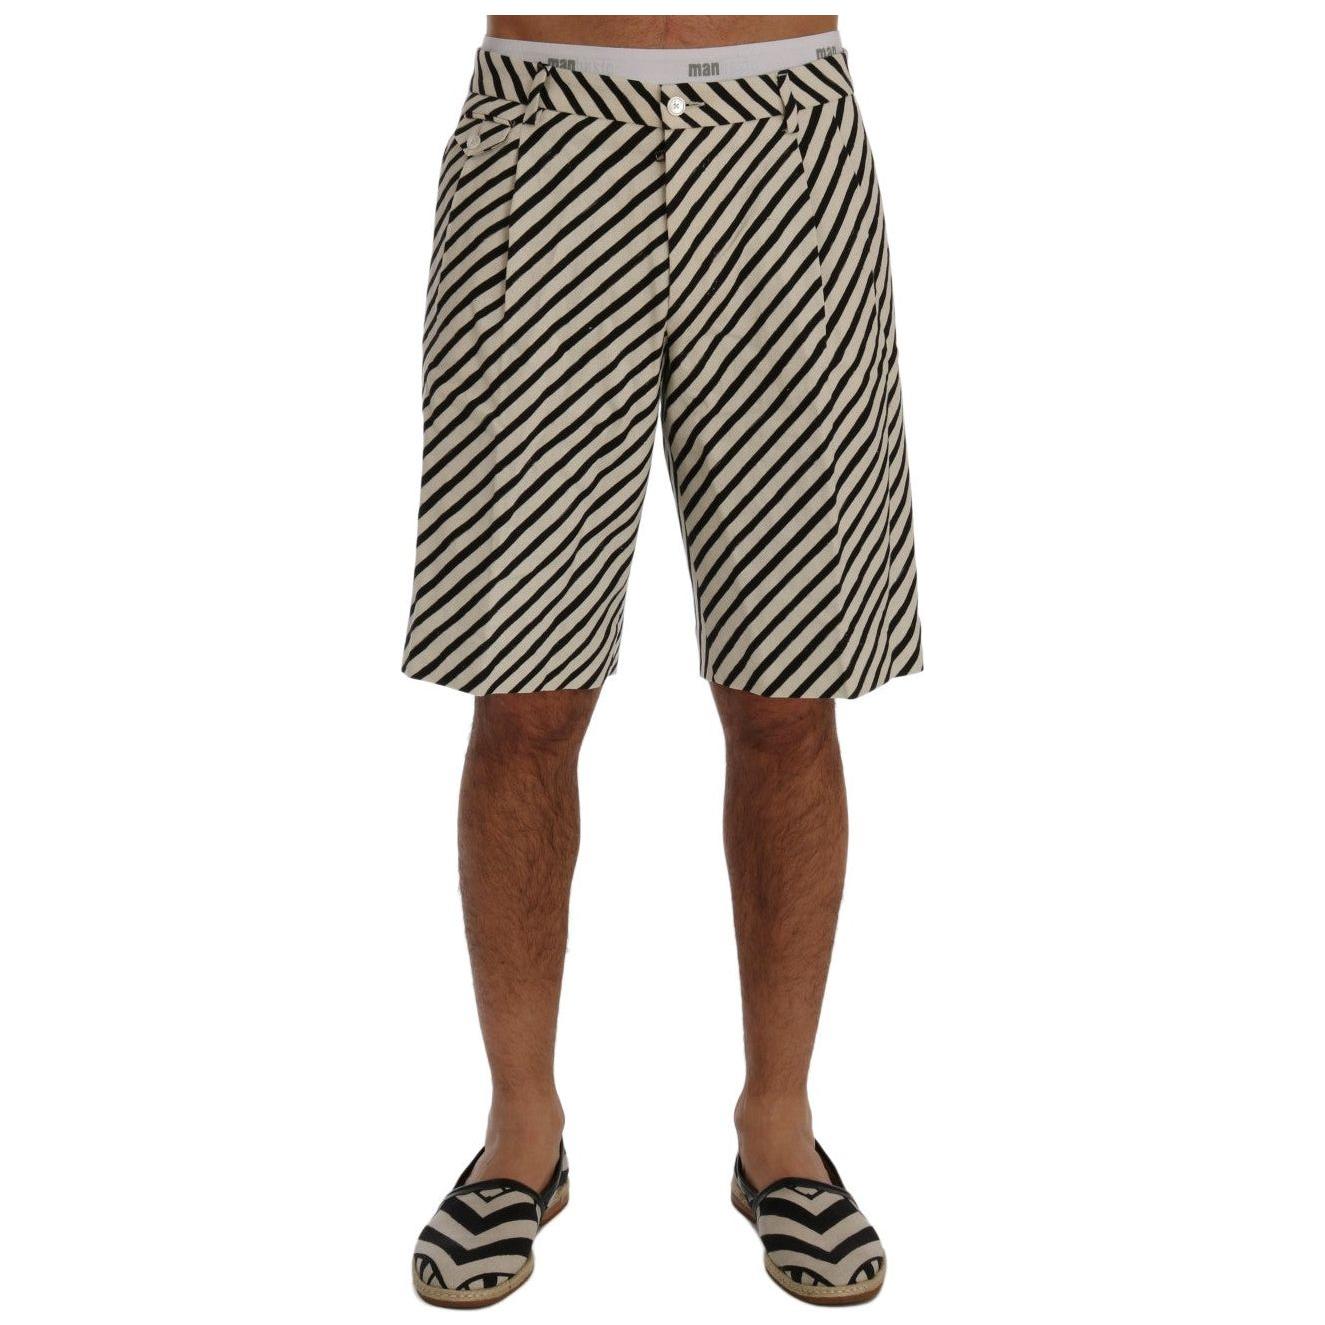 Dolce & Gabbana Striped Hemp Casual Shorts white-black-striped-hemp-casual-shorts 443695-white-black-striped-hemp-casual-shorts.jpg